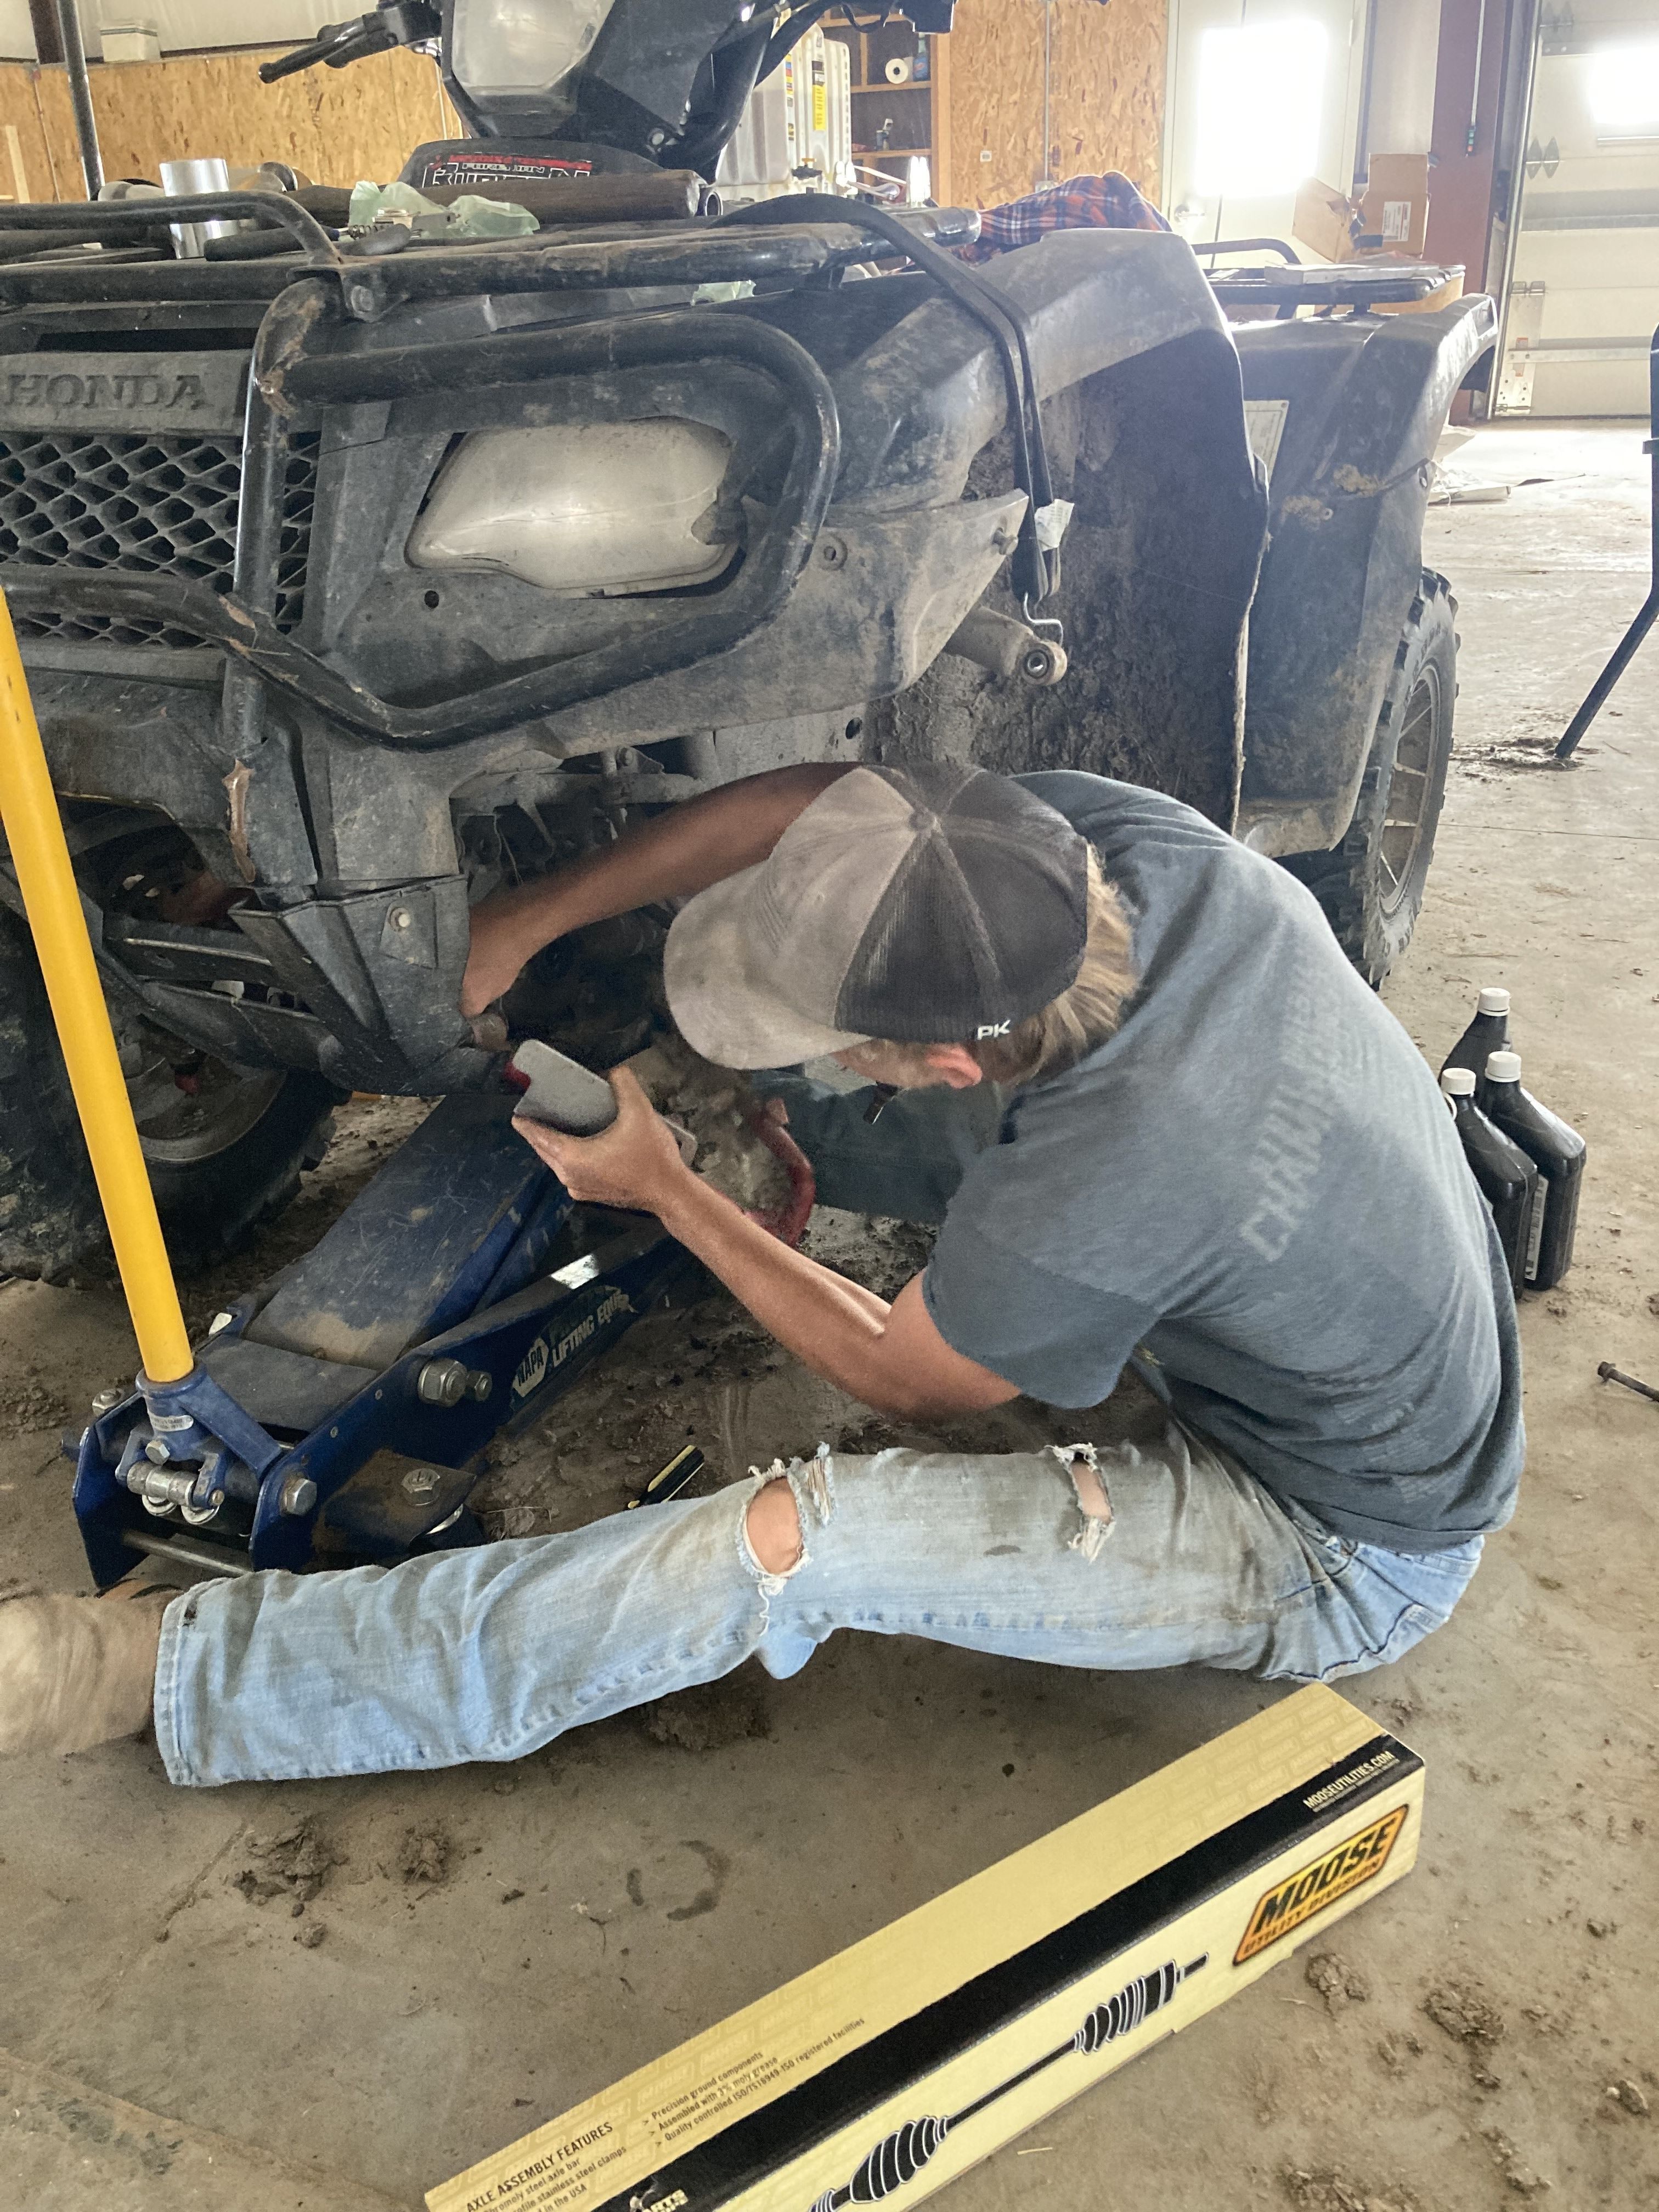 Take a Ride Through Austin's ATV Repair Shop